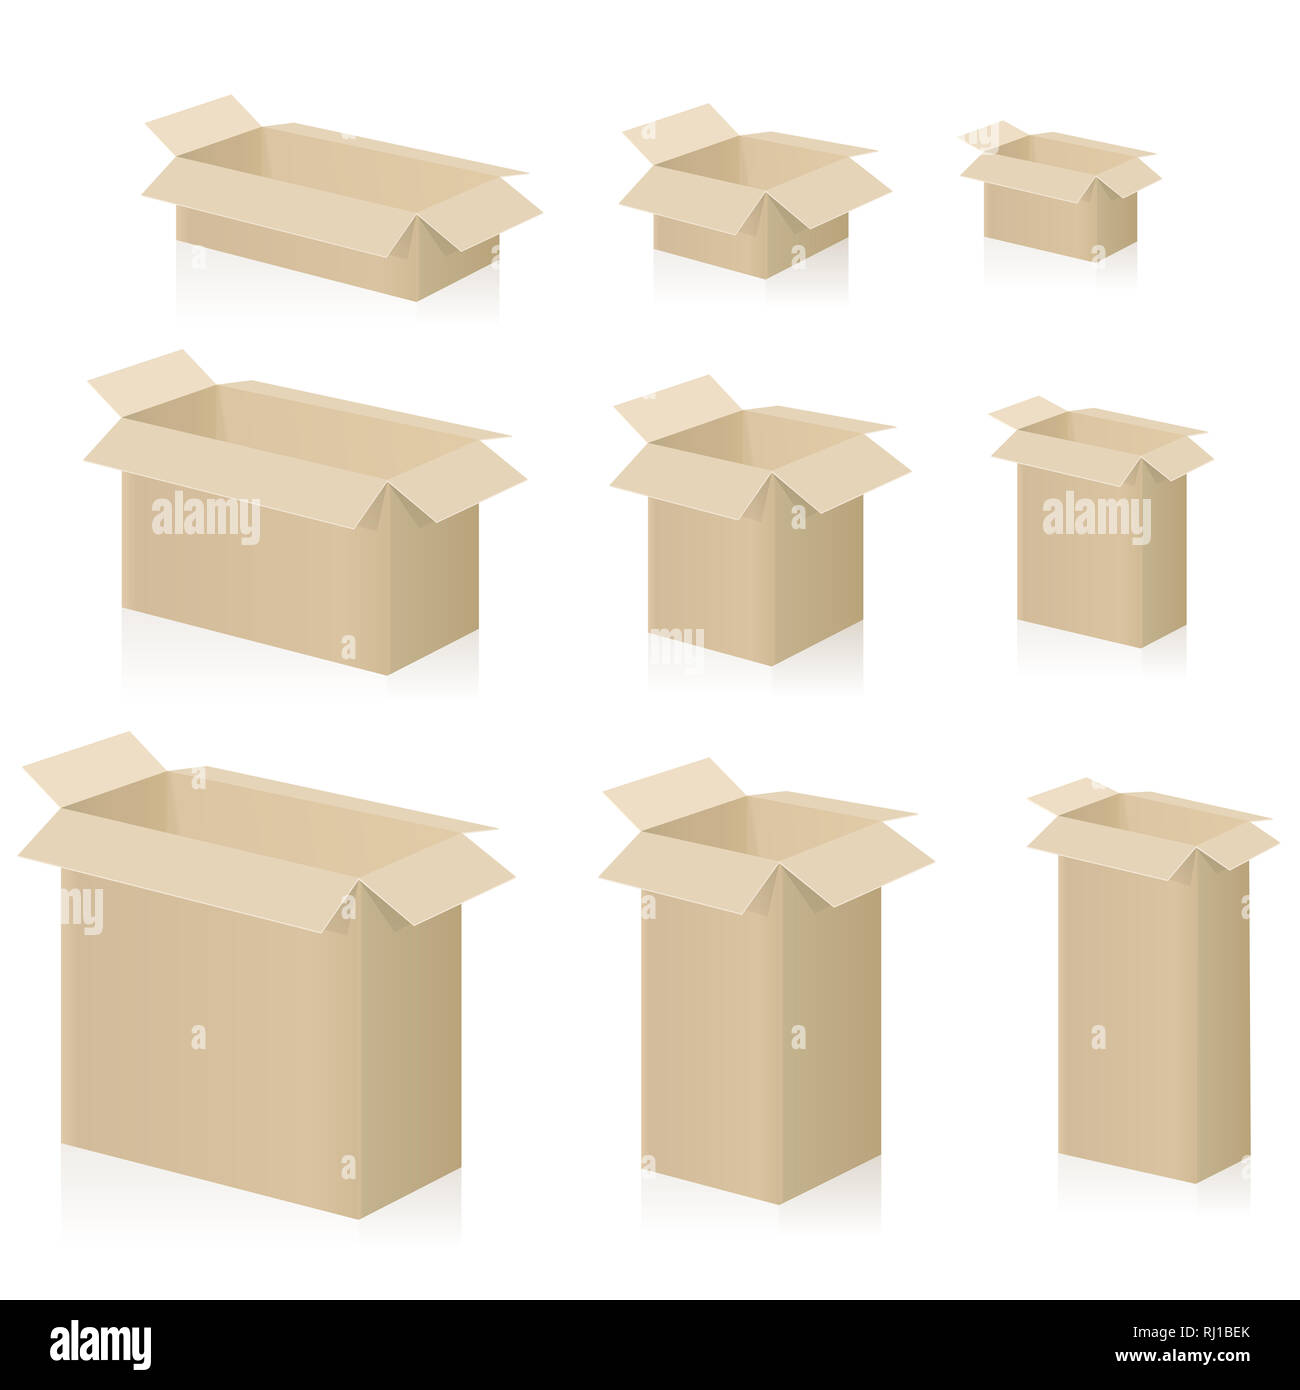 Kartons, unterschiedliche Größen, Kisten mit offenen Deckel - Abbildung auf weißem Hintergrund. Stockfoto